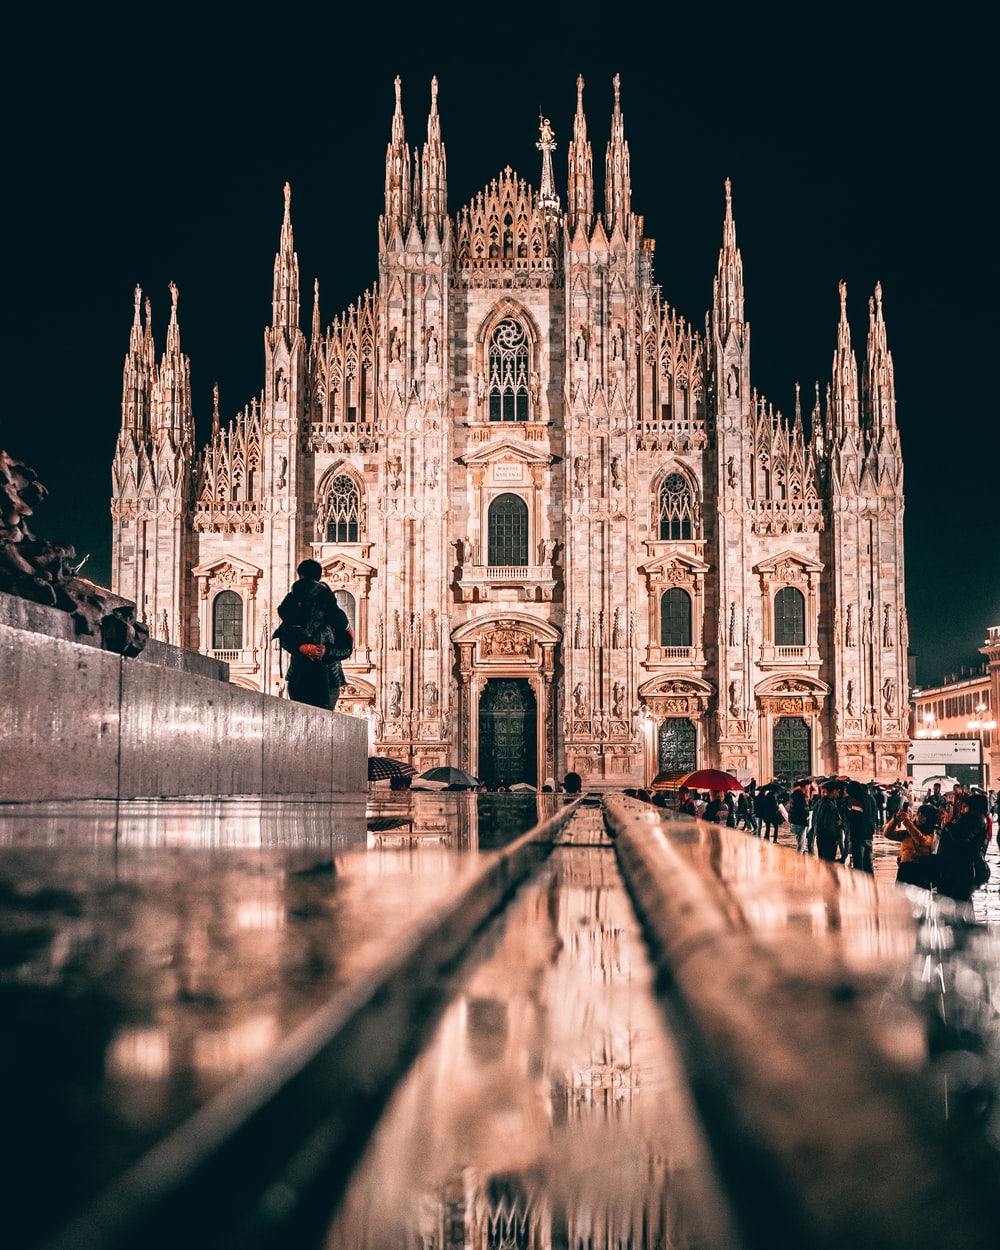 Milan Cathedral, Italy at night photo